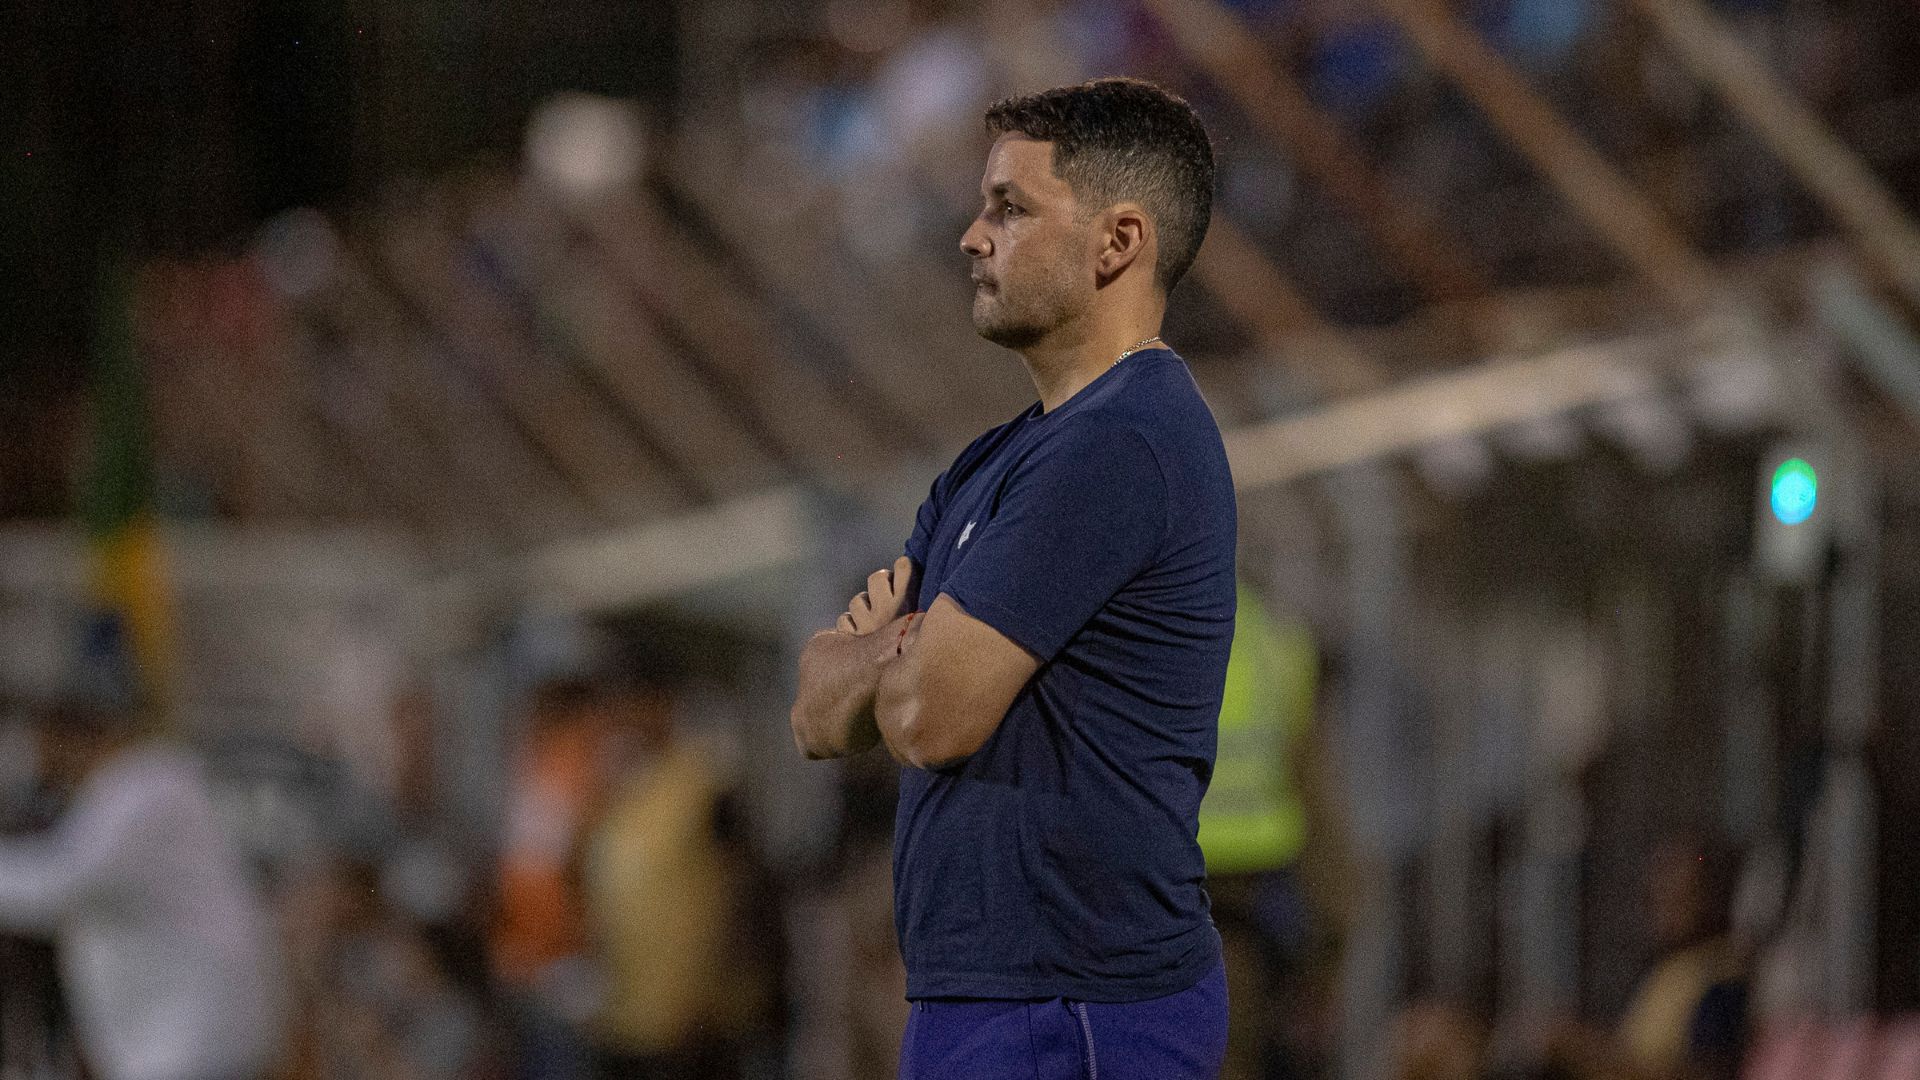 Larcamón durante a partida entre Cruzeiro e Democrata GV (Crédito: Staff Images / Cruzeiro)